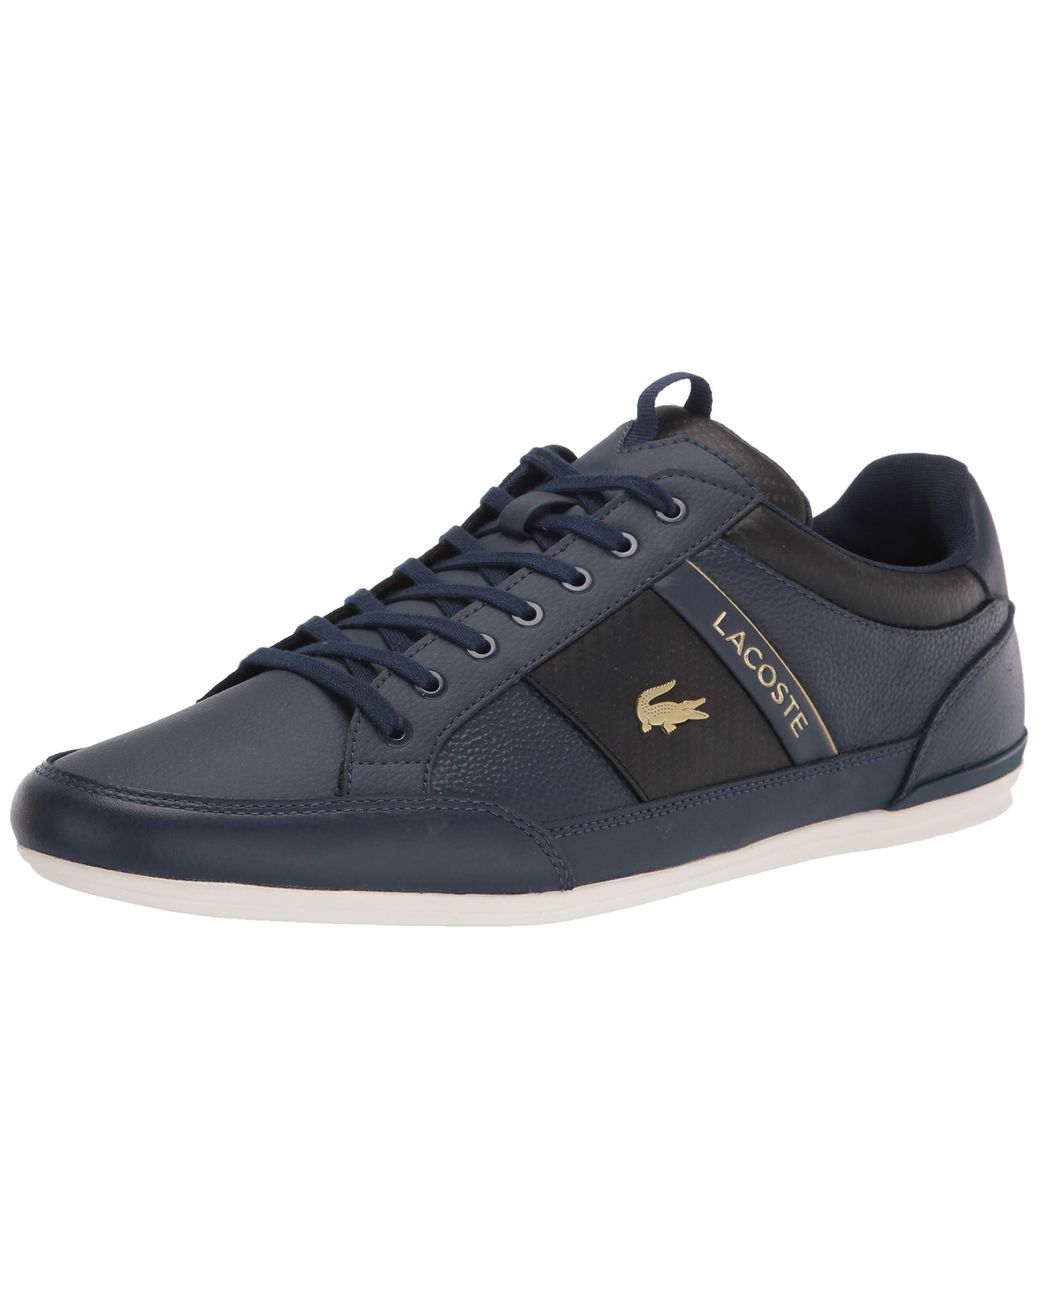 Lacoste Mens Chaymon 0120 1 Cma Sneaker in Navy/Black (Blue) for Men - Lyst